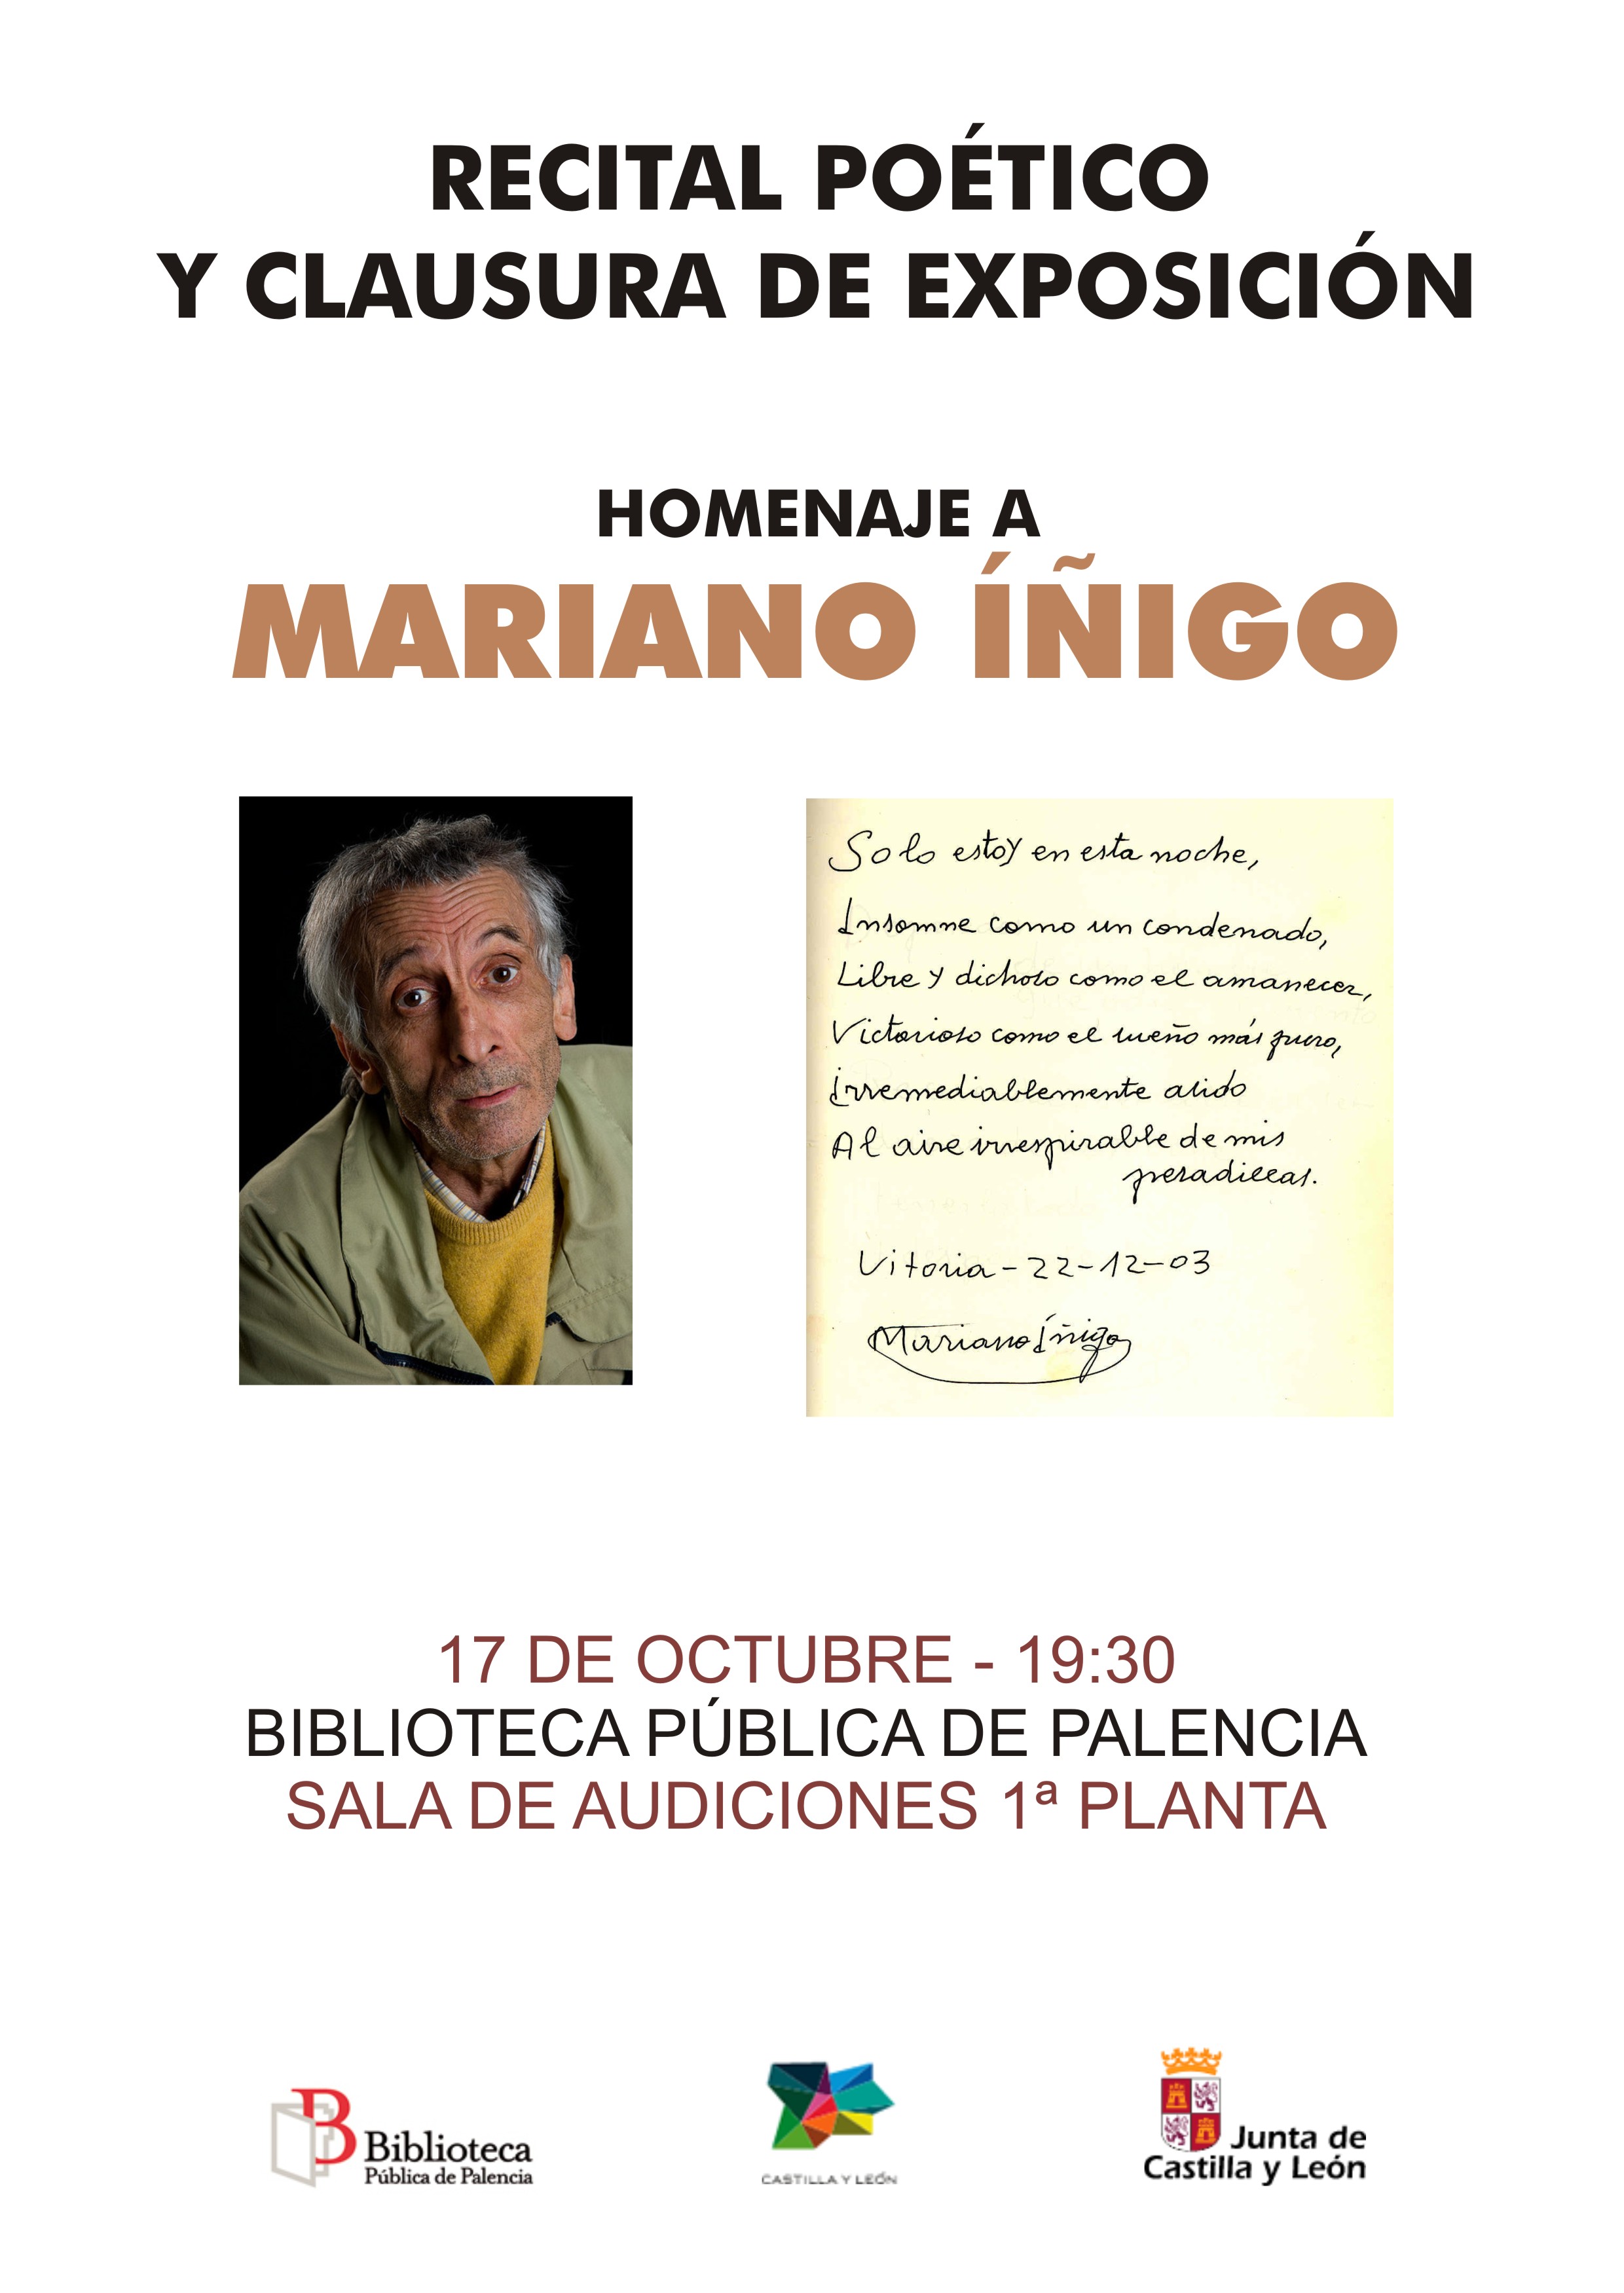 Recital poético y clausura de exposición homenaje a Mariano Íñigo